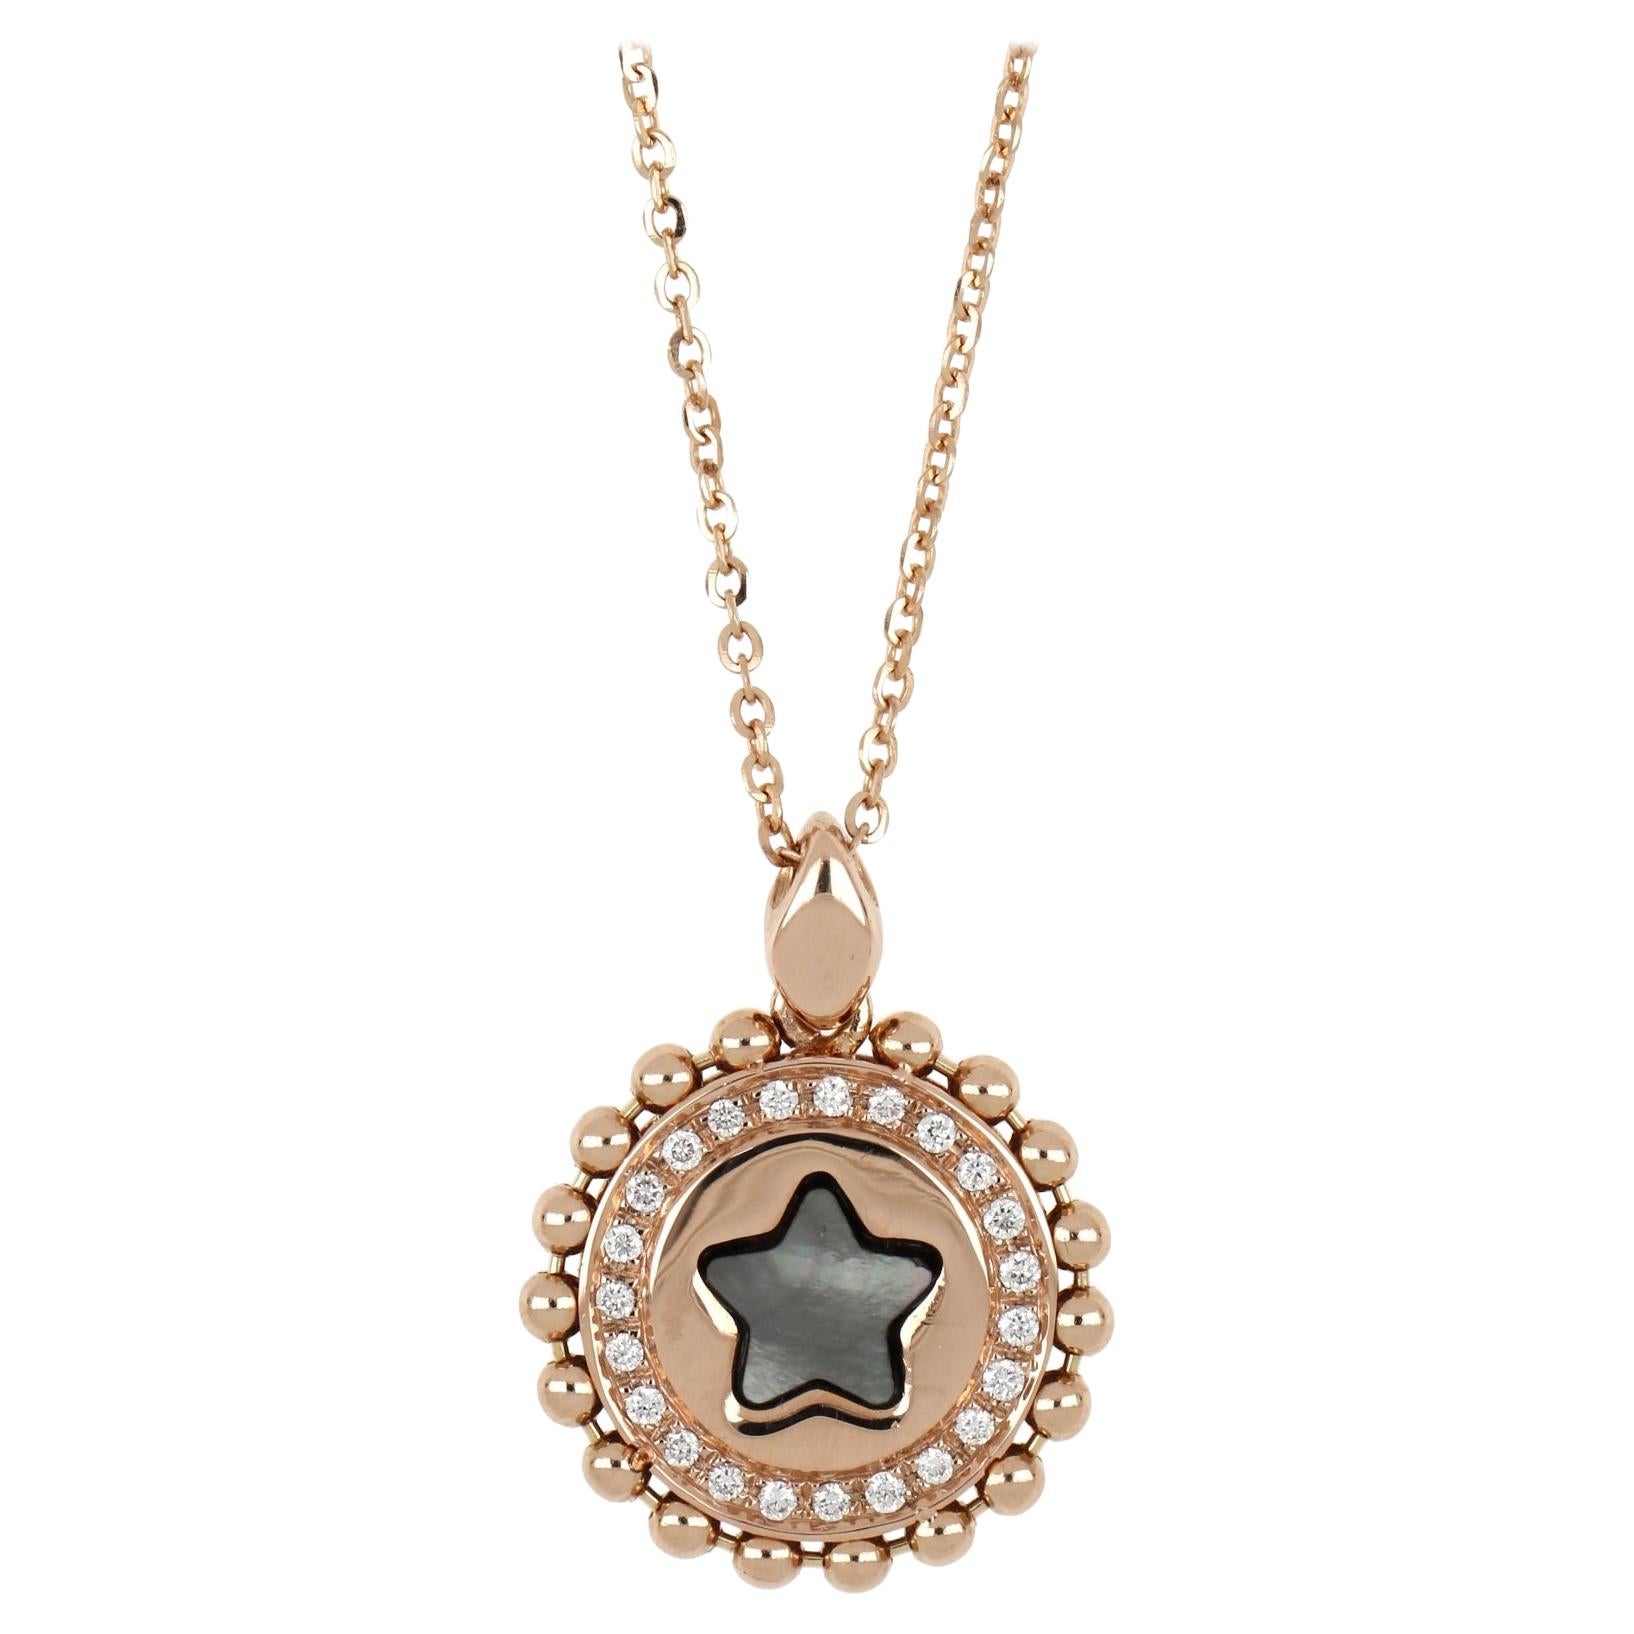 Collier inversé « Star » en or rose 18 carats avec diamants et nacre